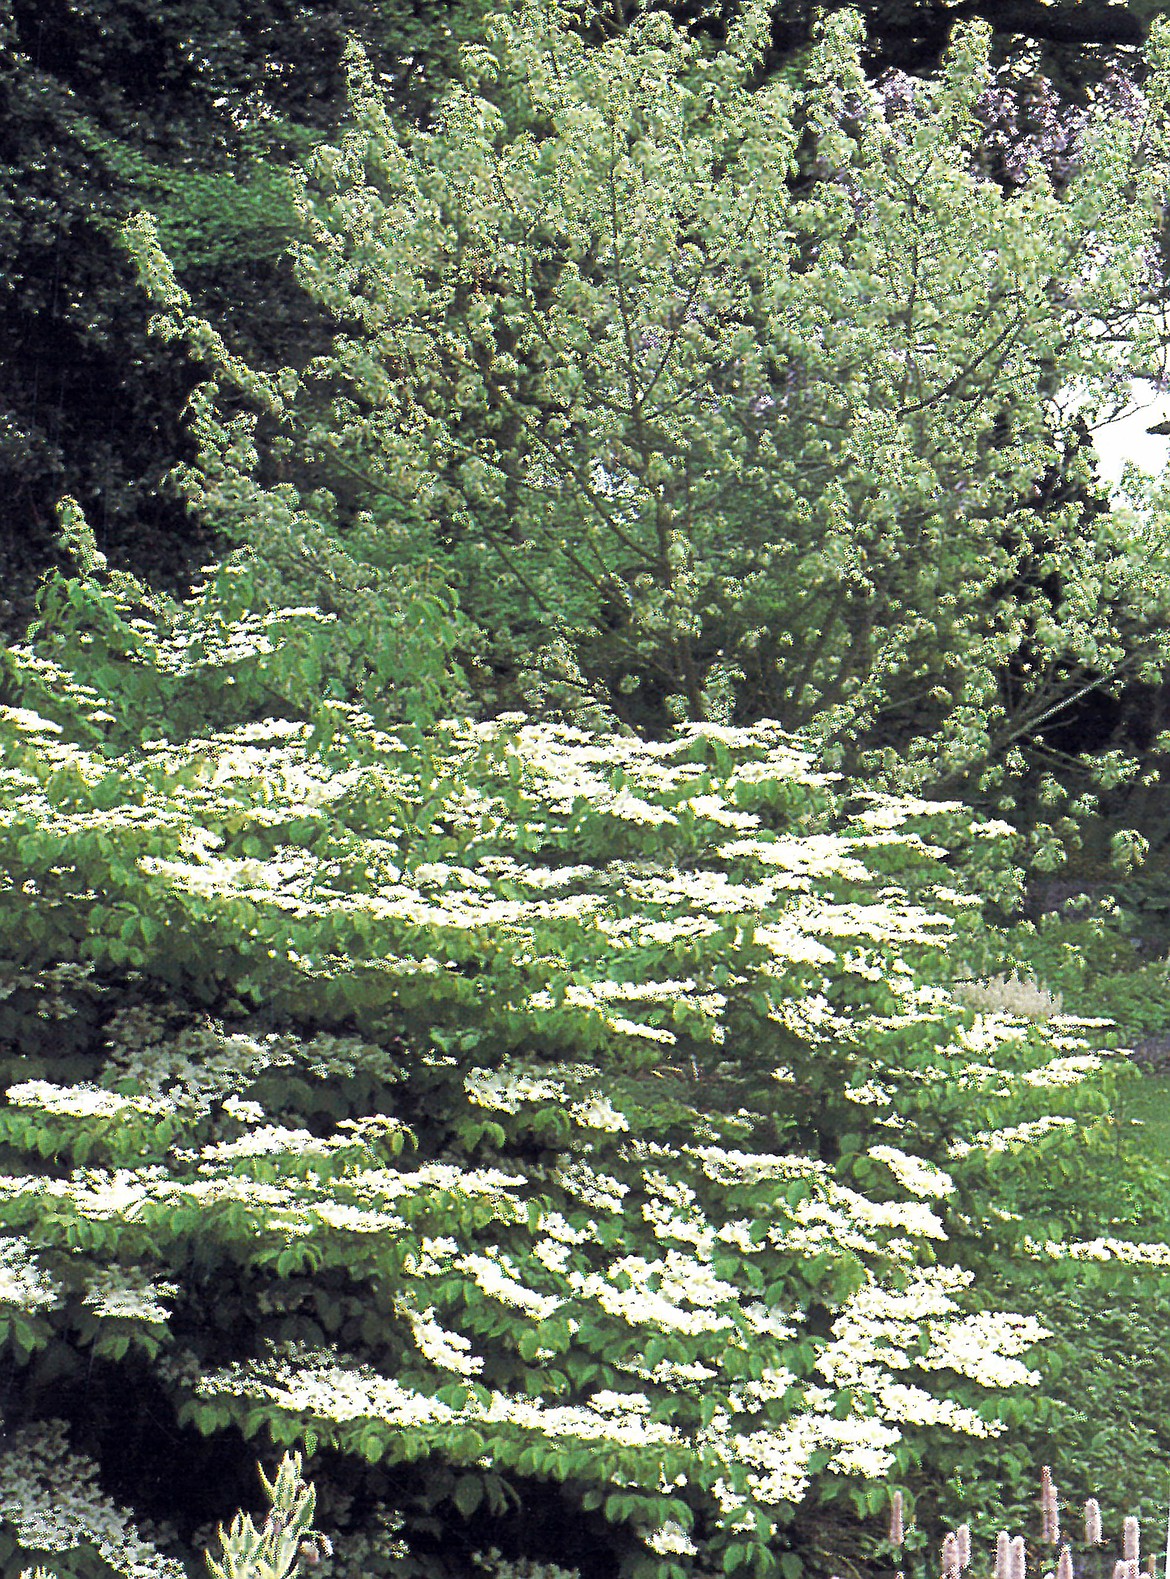 A viburnum plicatum “Lace Cap” fronts an unidentified shrub.